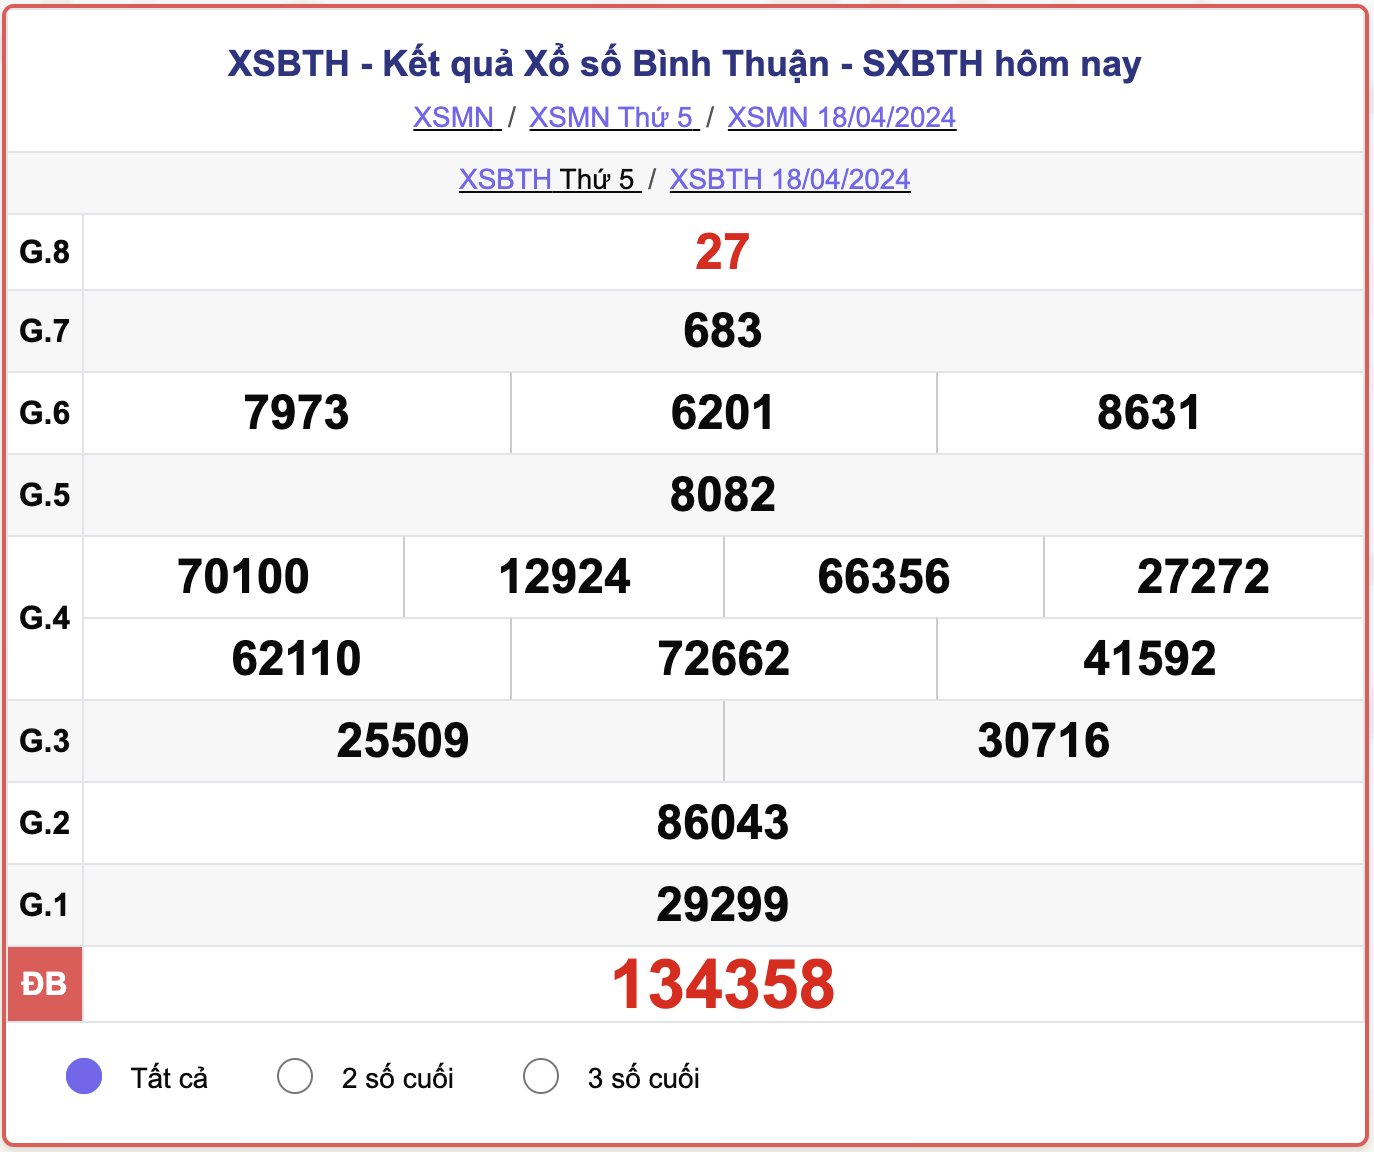 XSBTH thứ 5, kết quả xổ số Bình Thuận ngày 18/4/2024.